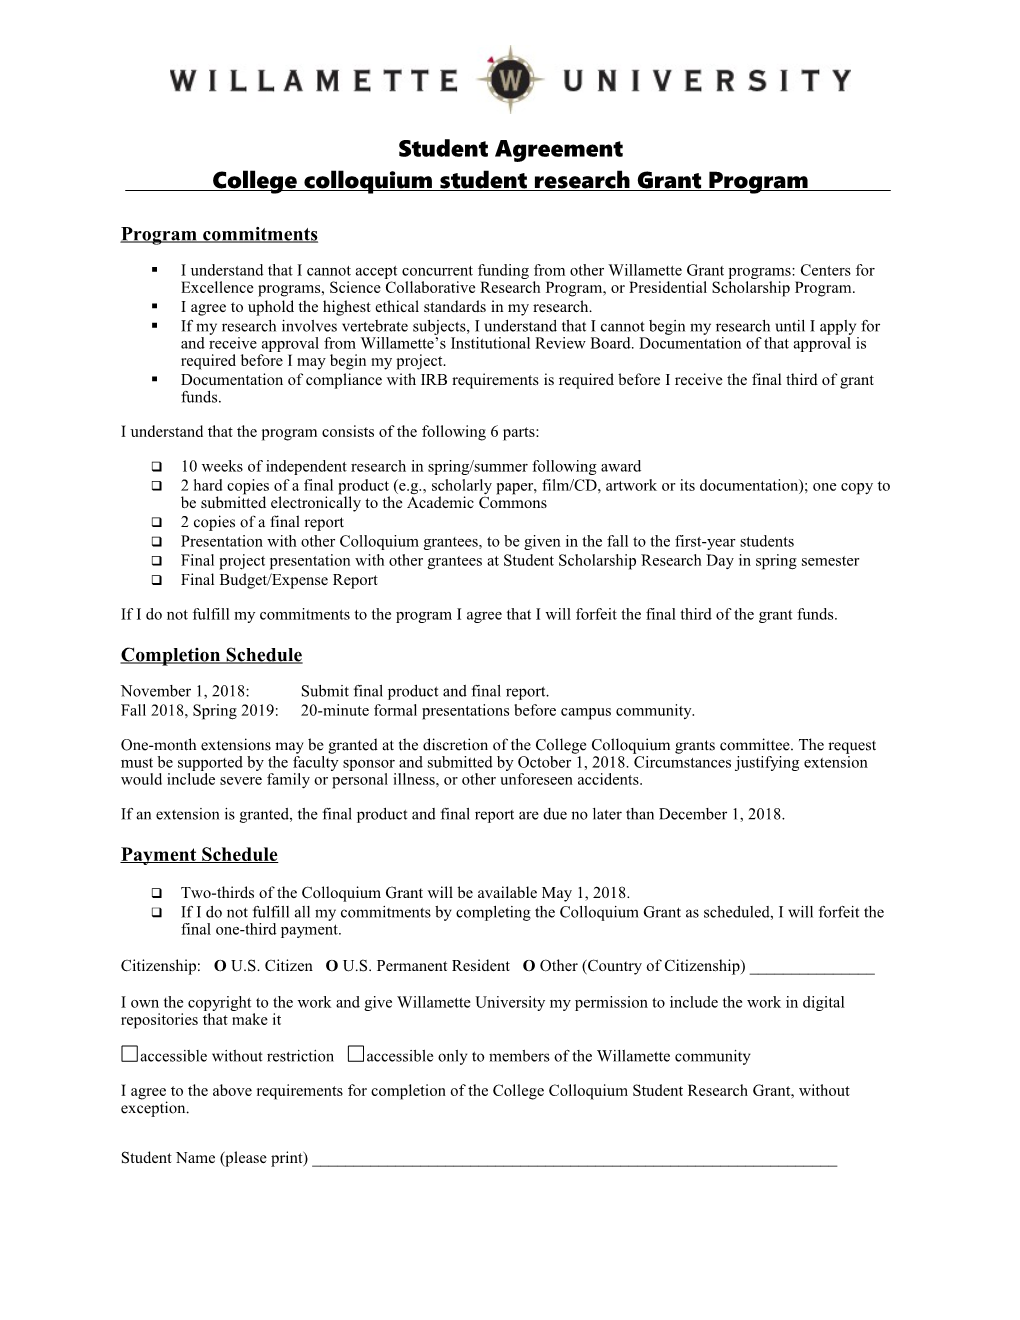 College Colloquium Student Research Grant Program